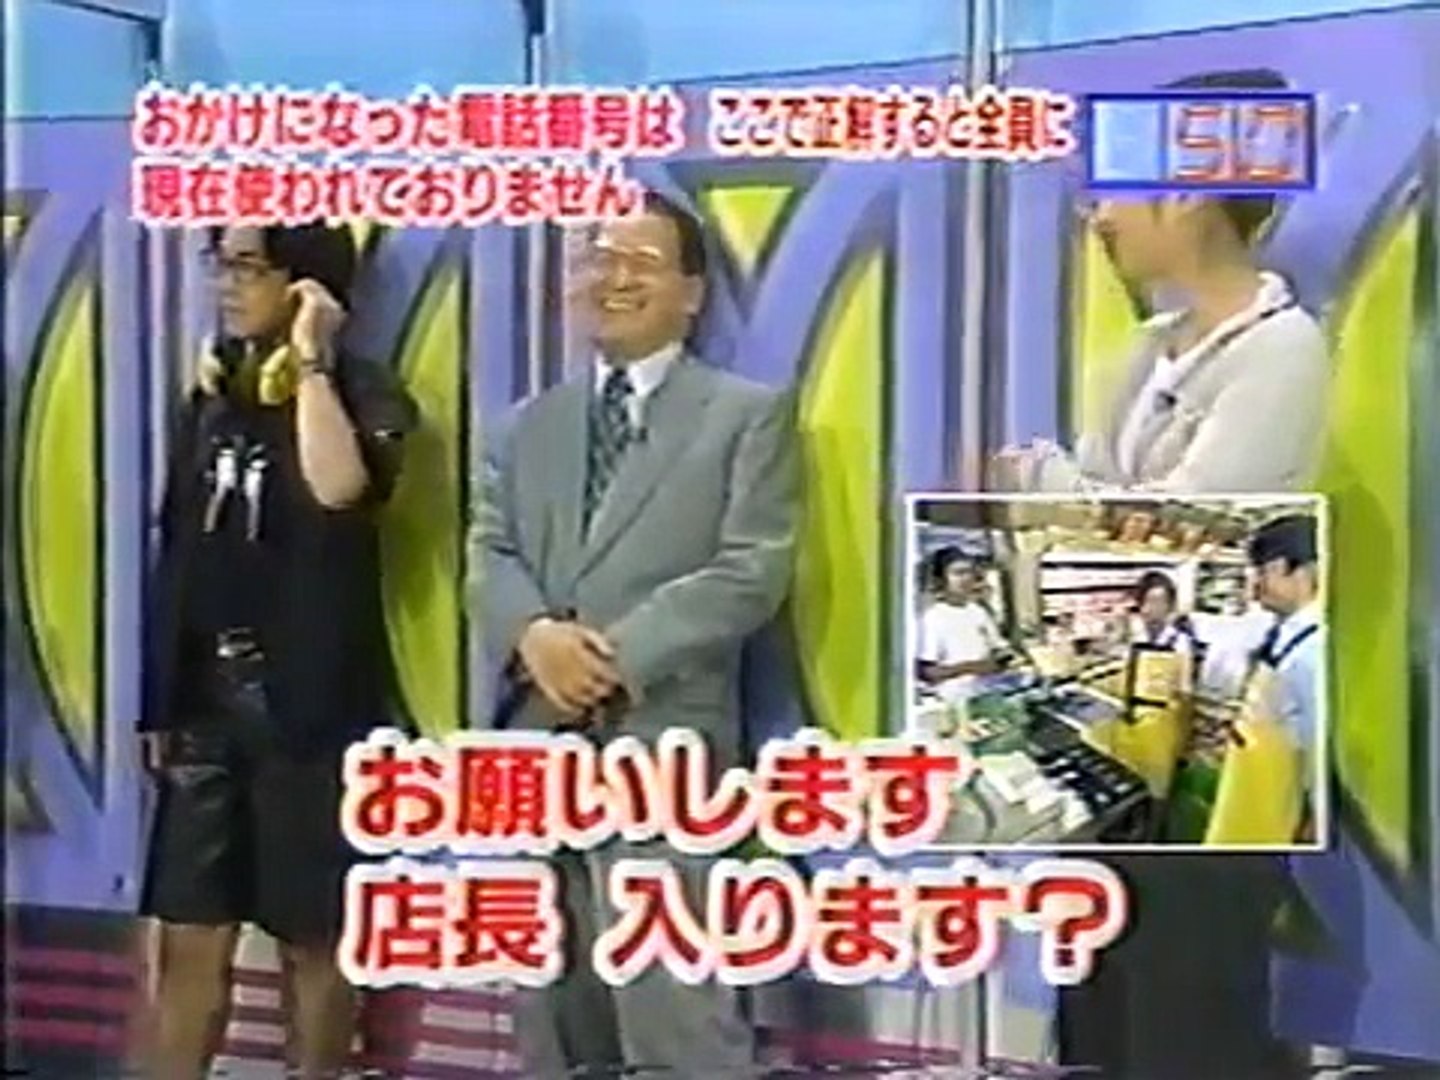 マジカル頭脳パワー 1996年9月5日放送 修正版 Video Dailymotion